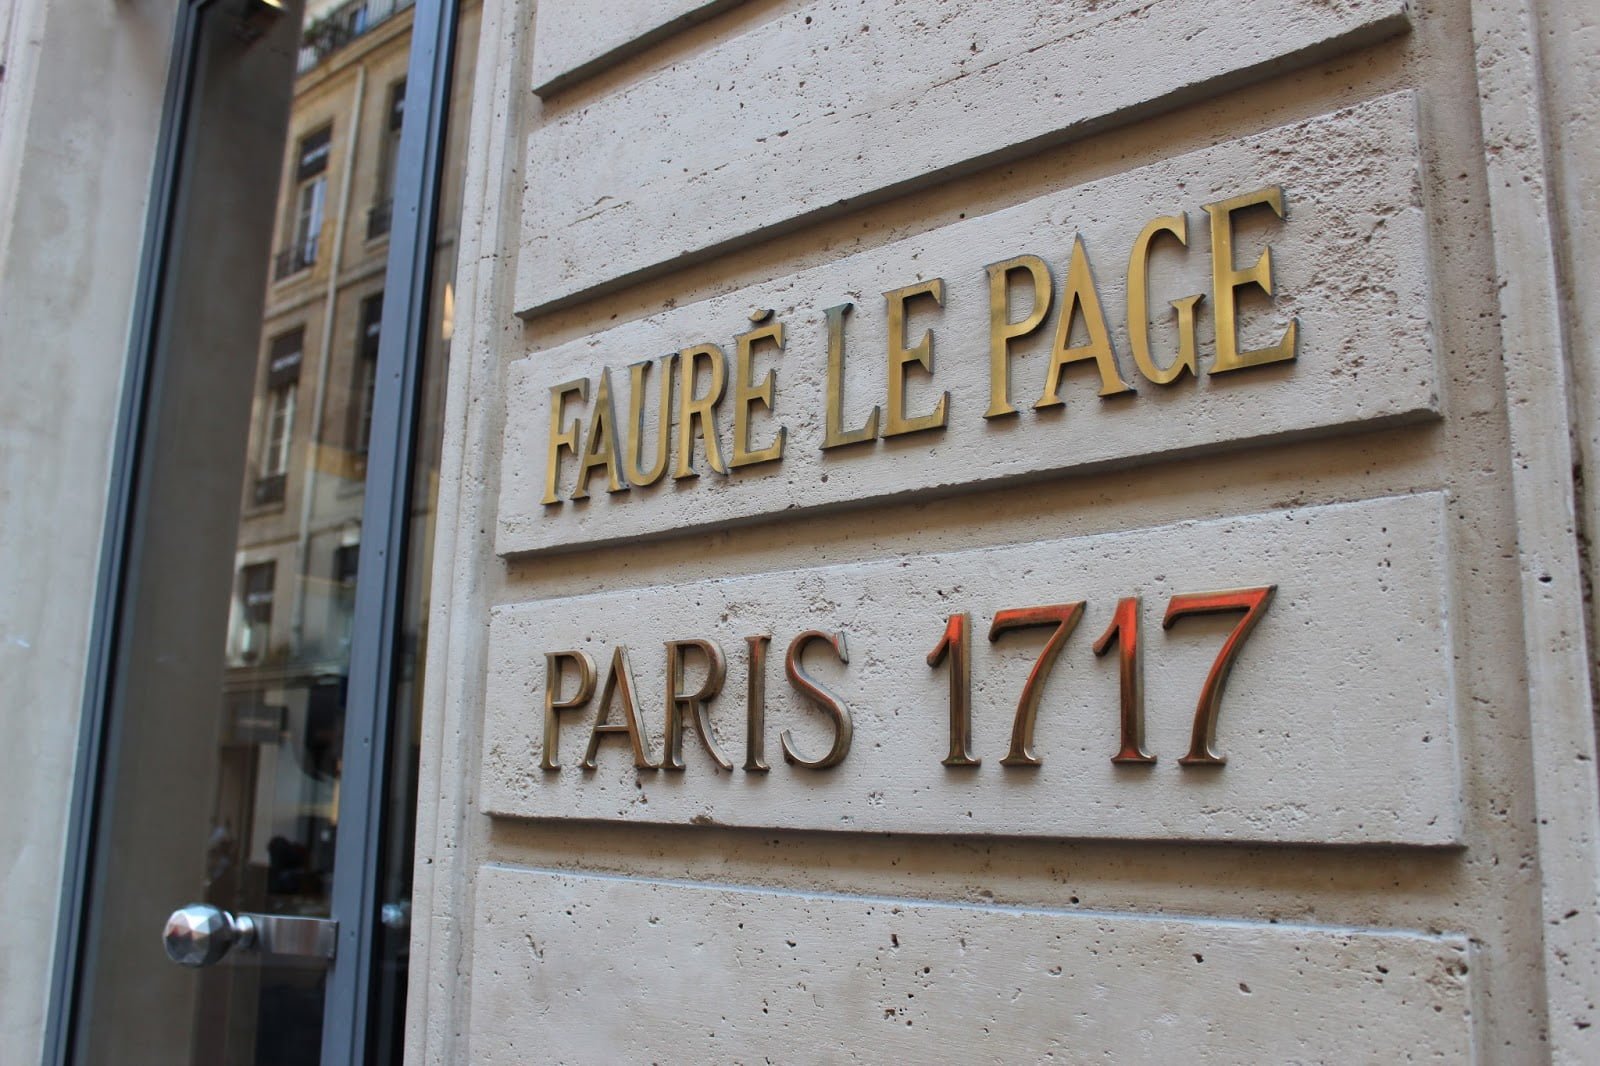 Fauré Le Page Daily battle tote vs Louis Vuitton Neverfull